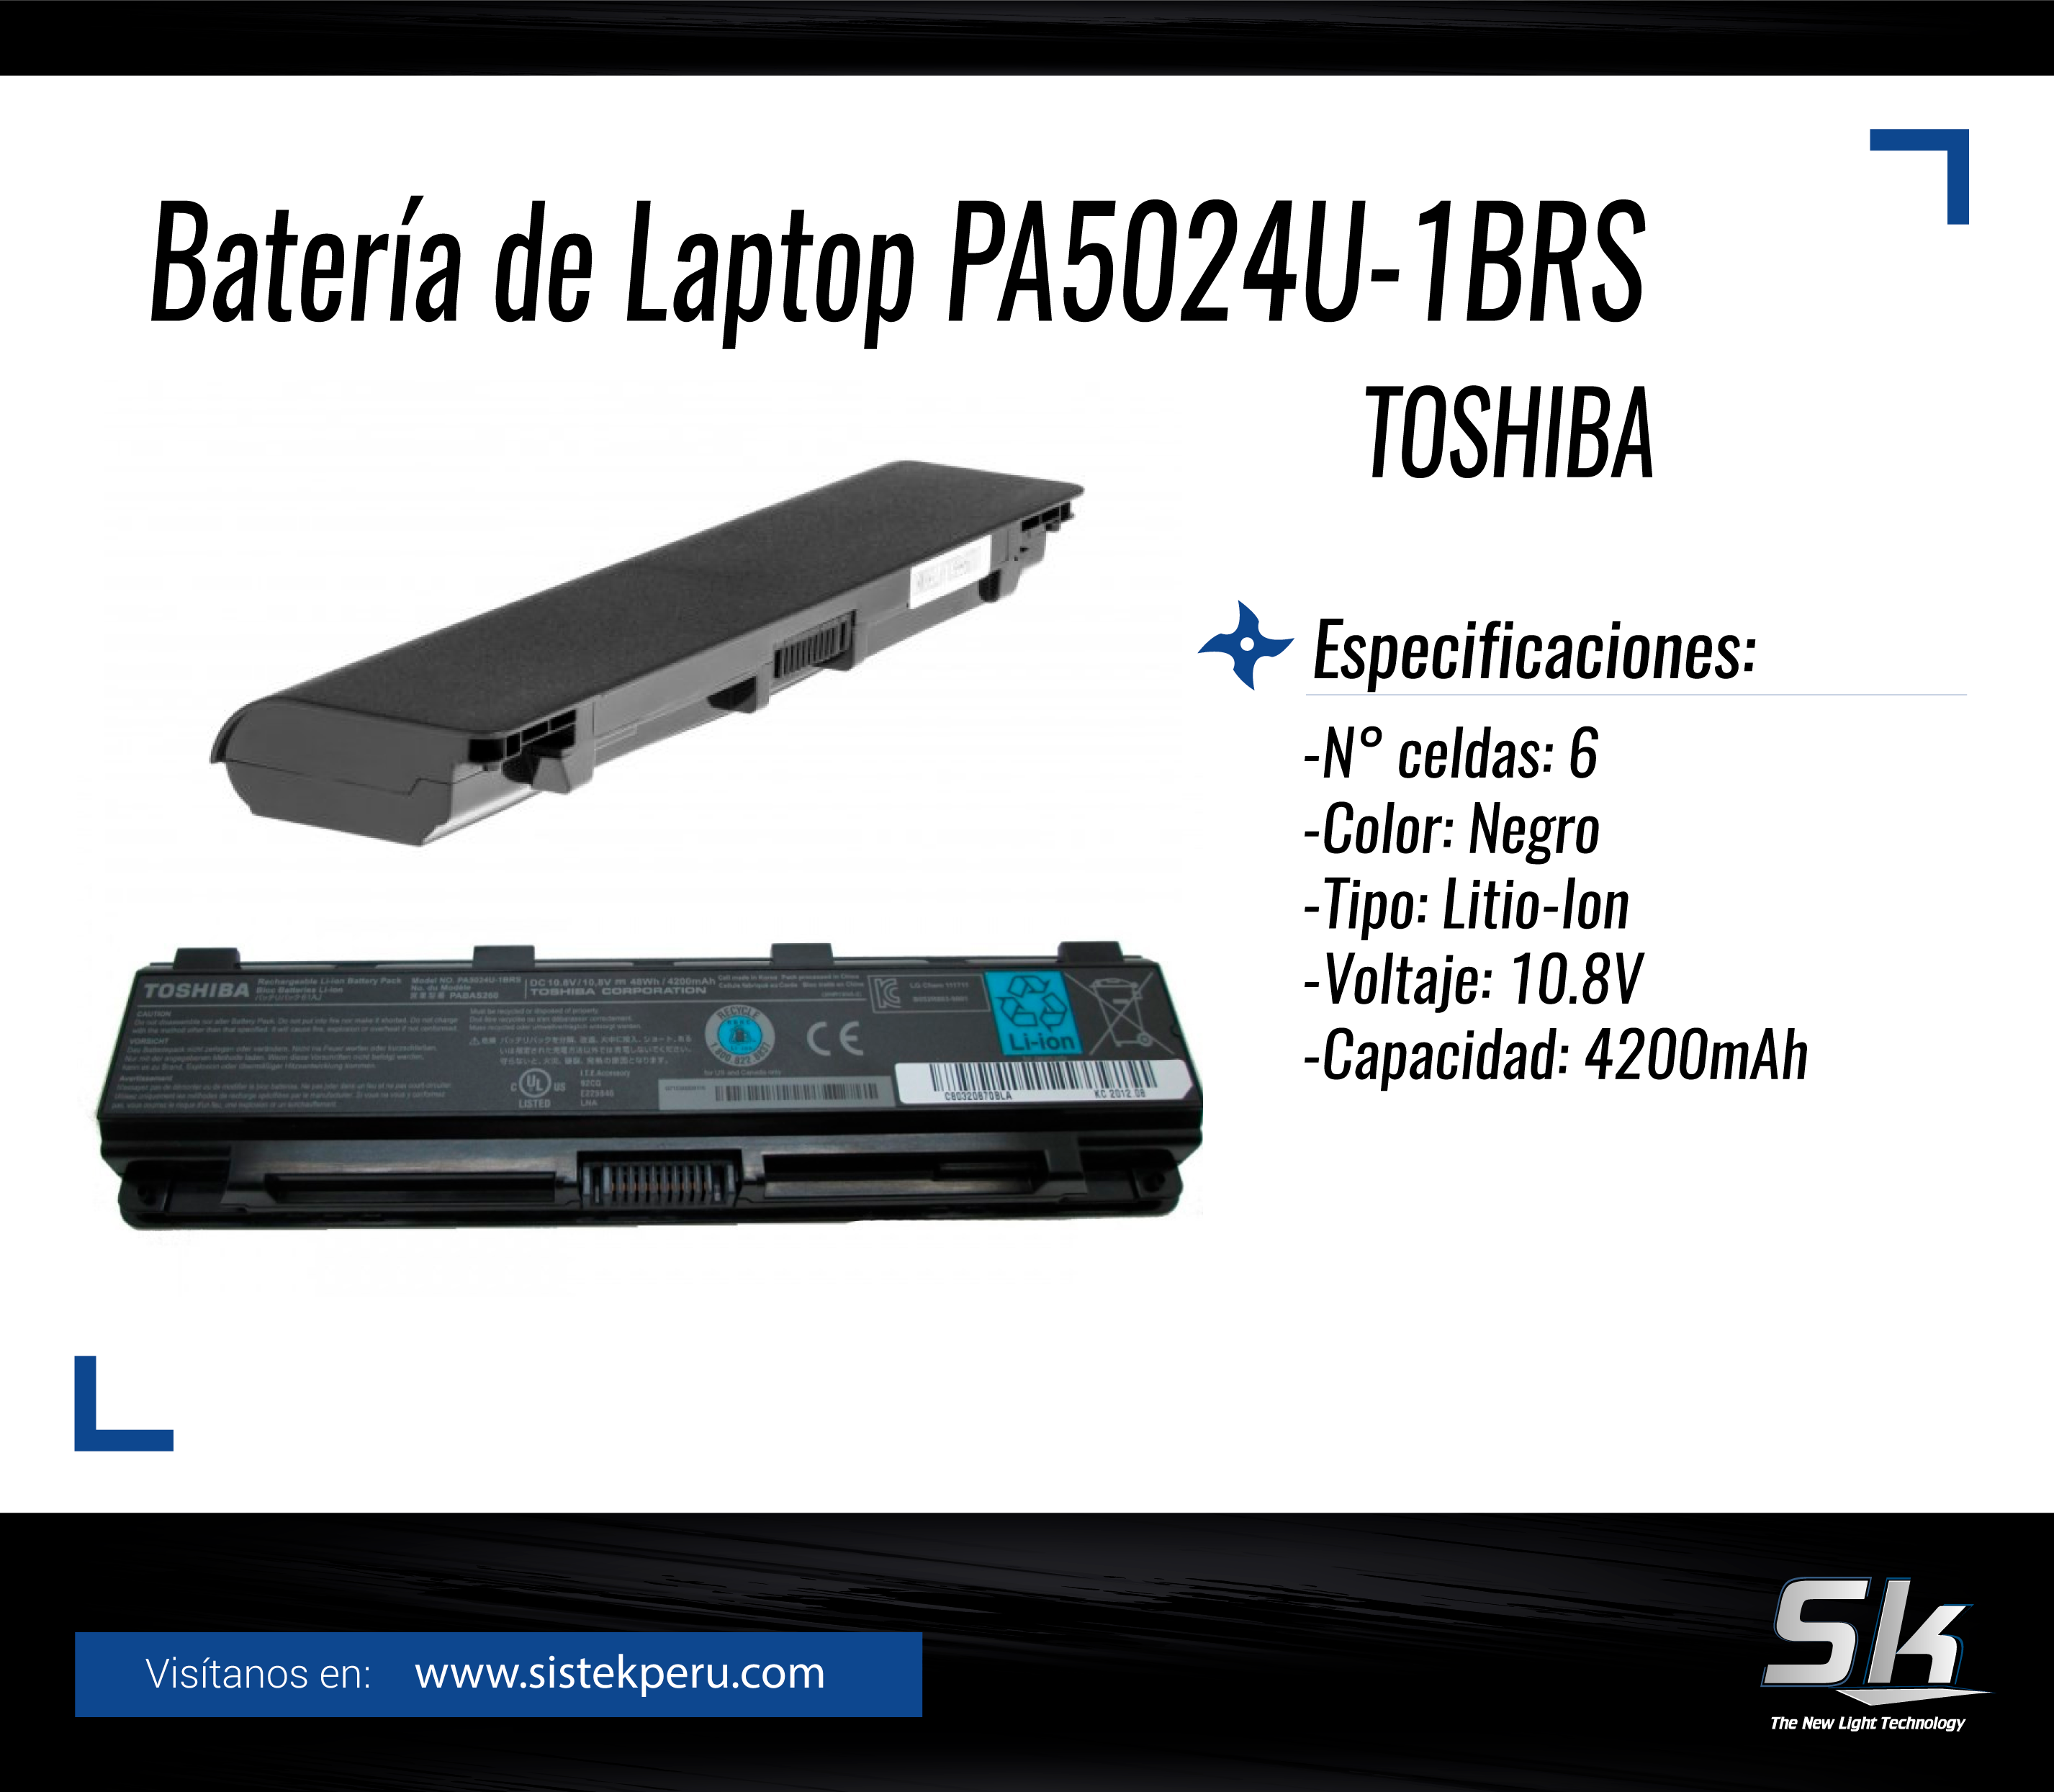 Bateria de Laptop PA5024U-1BRS